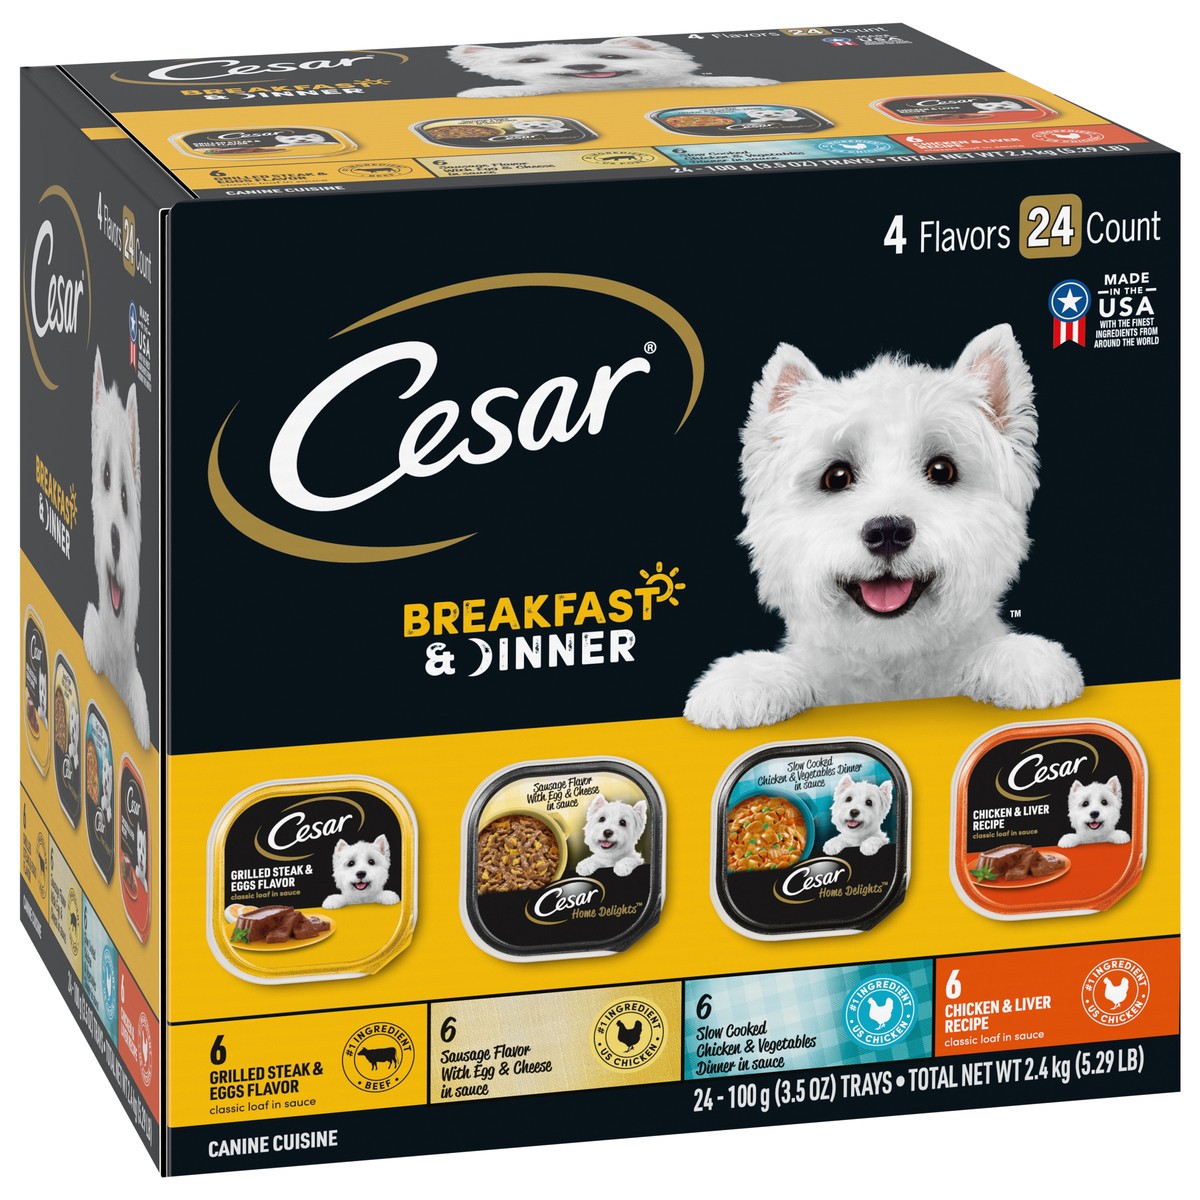 slide 2 of 9, Cesar Breakfast & Dinner Canine Cuisine 24 - 3.5 oz Trays, 3.5 oz